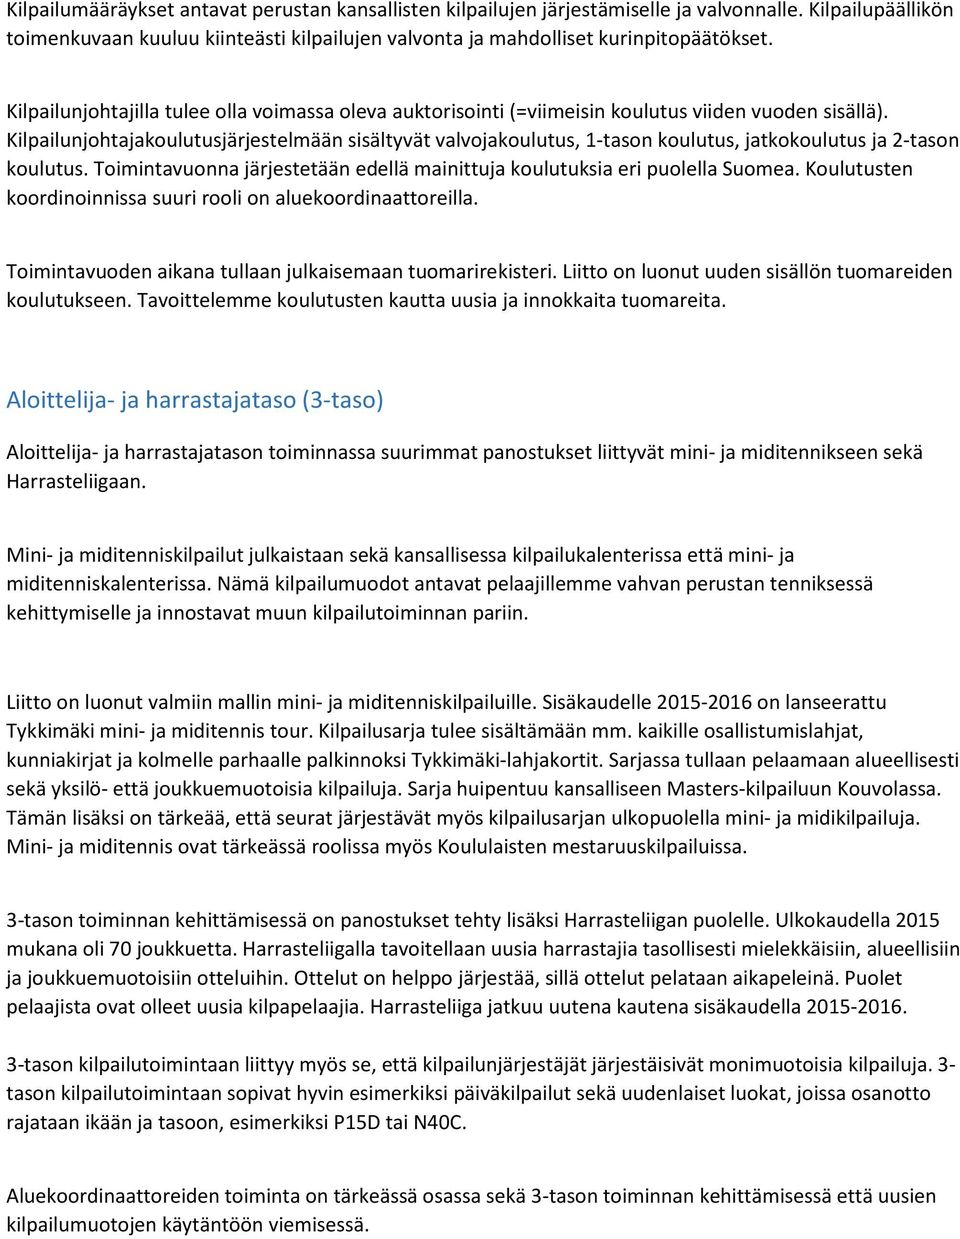 Kilpailunjohtajakoulutusjärjestelmään sisältyvät valvojakoulutus, 1-tason koulutus, jatkokoulutus ja 2-tason koulutus. Toimintavuonna järjestetään edellä mainittuja koulutuksia eri puolella Suomea.